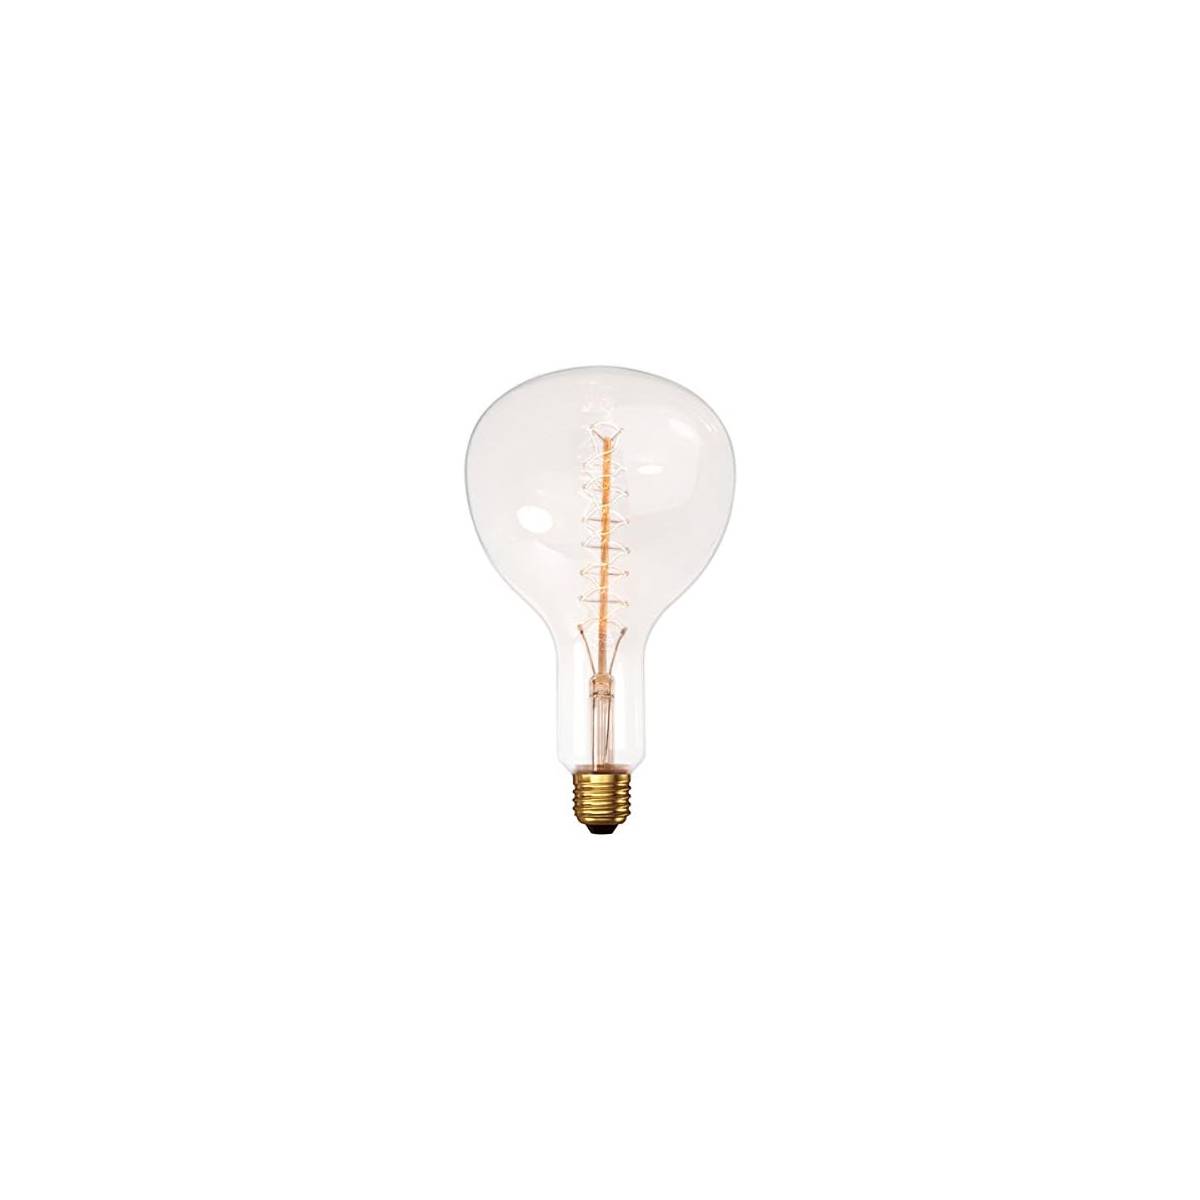 Ampoule XXL décorative transparente à filament croisé Calex Gold Line E40.